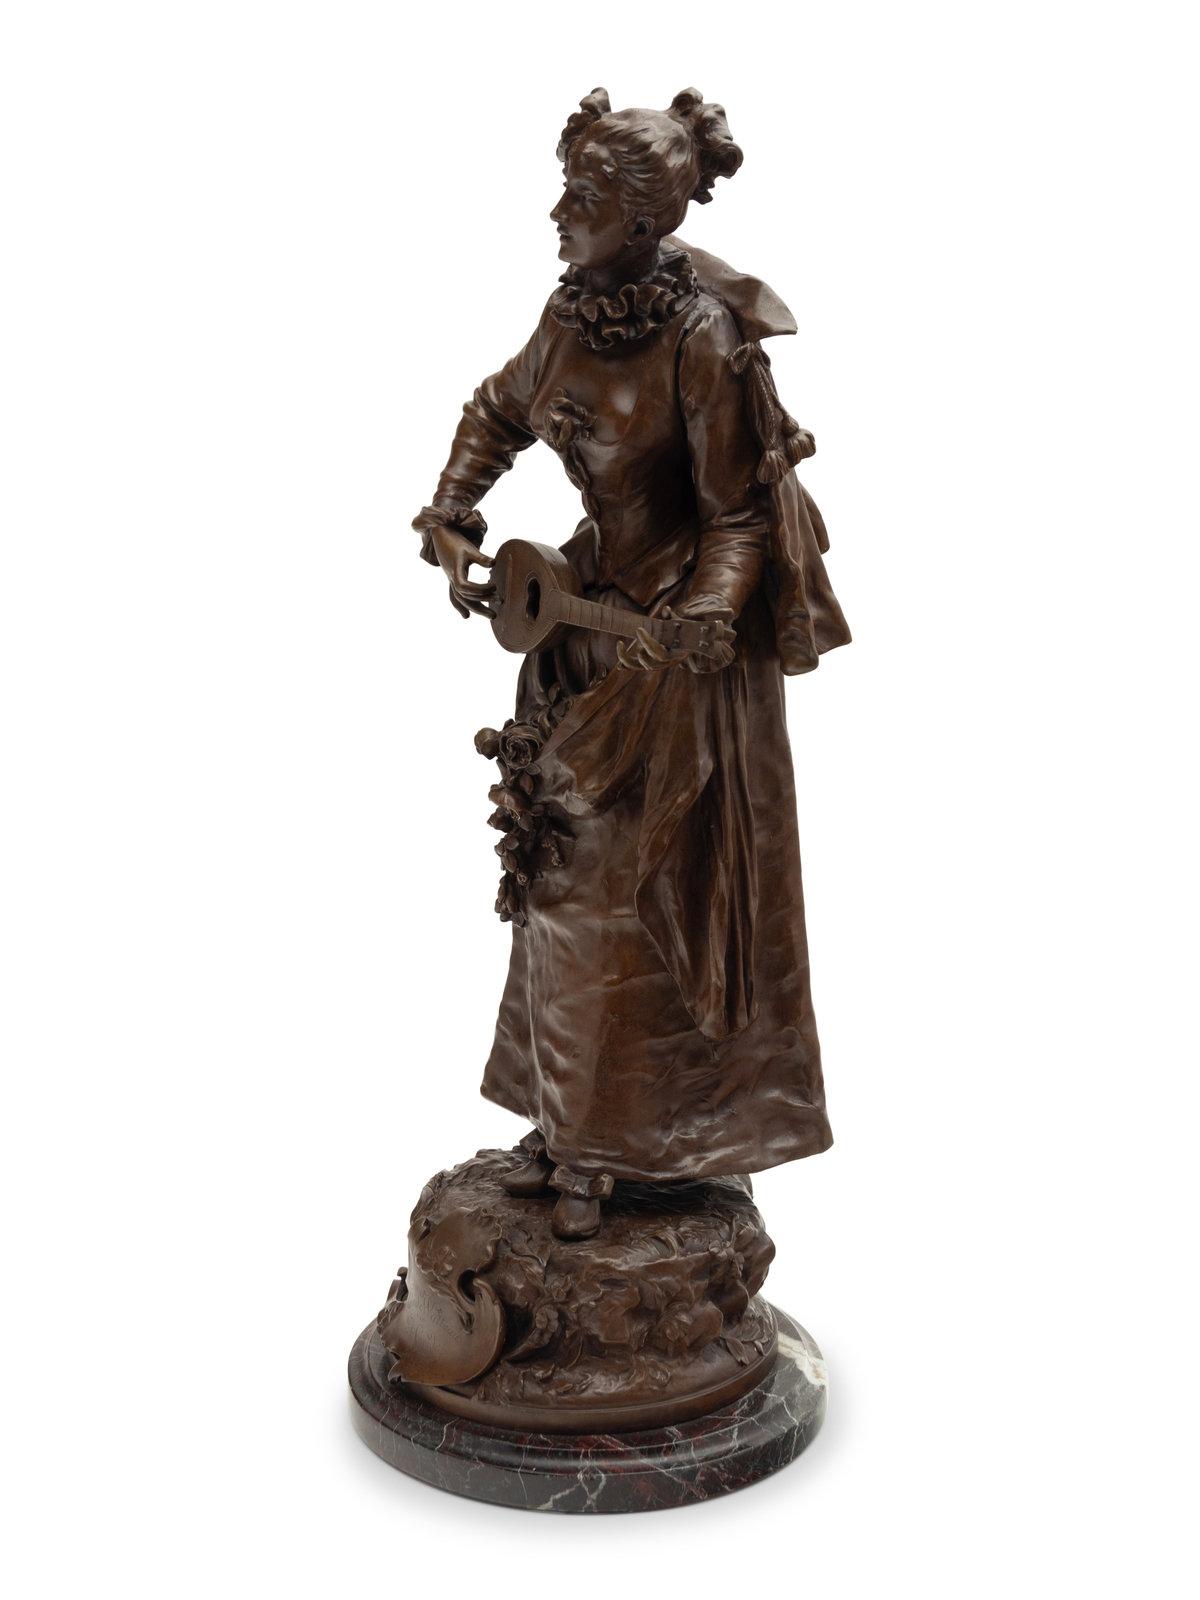 Sculpture en bronze à patine brune nuancée représentant une jeune femme jouant de la mandoline. Belle épreuve d'édition ancienne, titrée dans un cartouche 